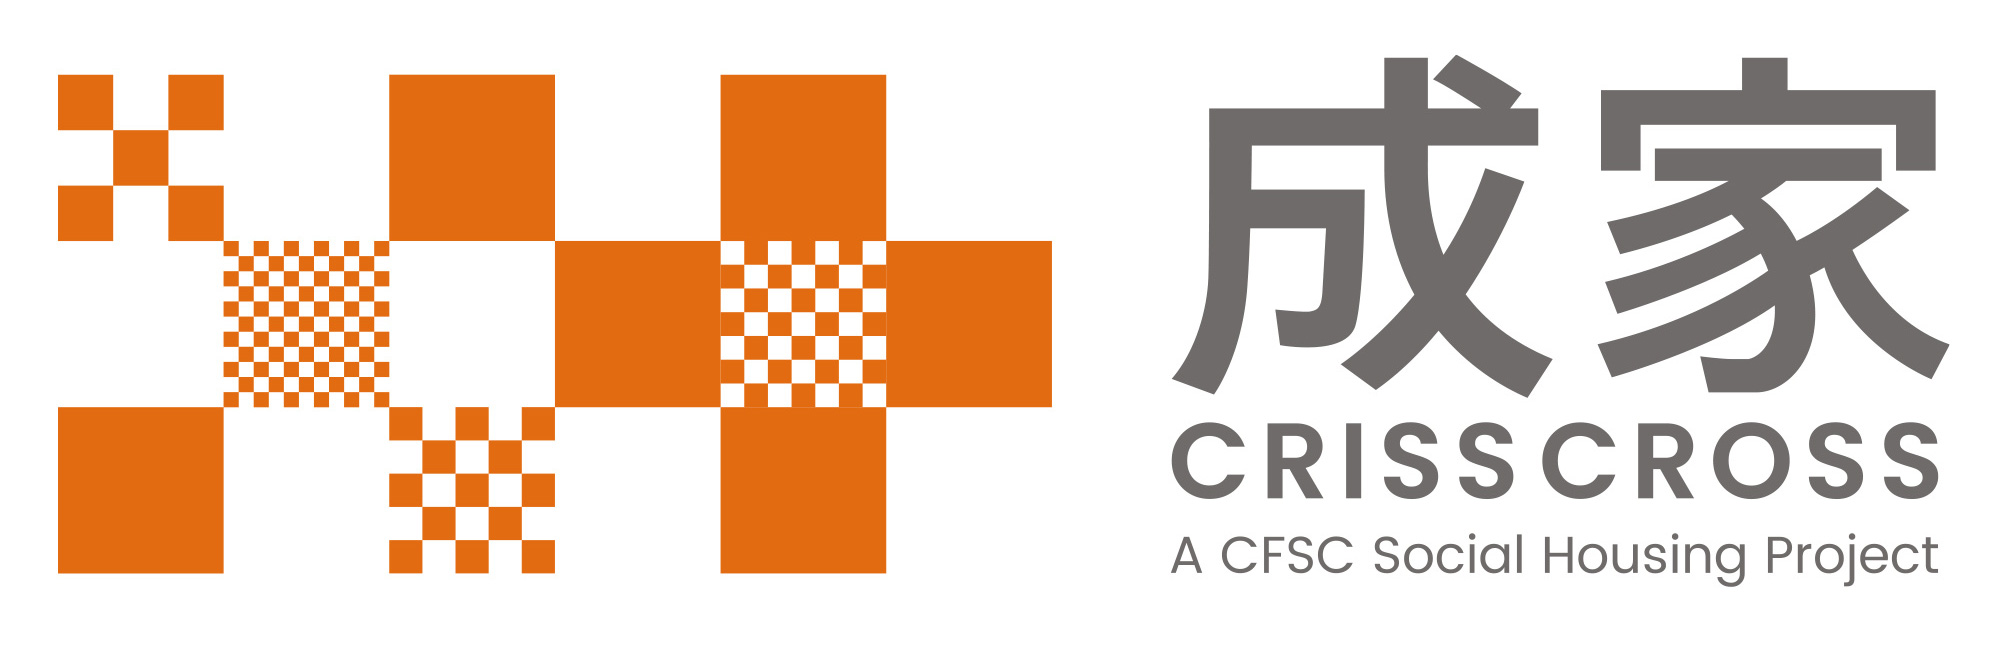 成家 CRISSCROSS - 基督教家庭服务中心社会房屋项目